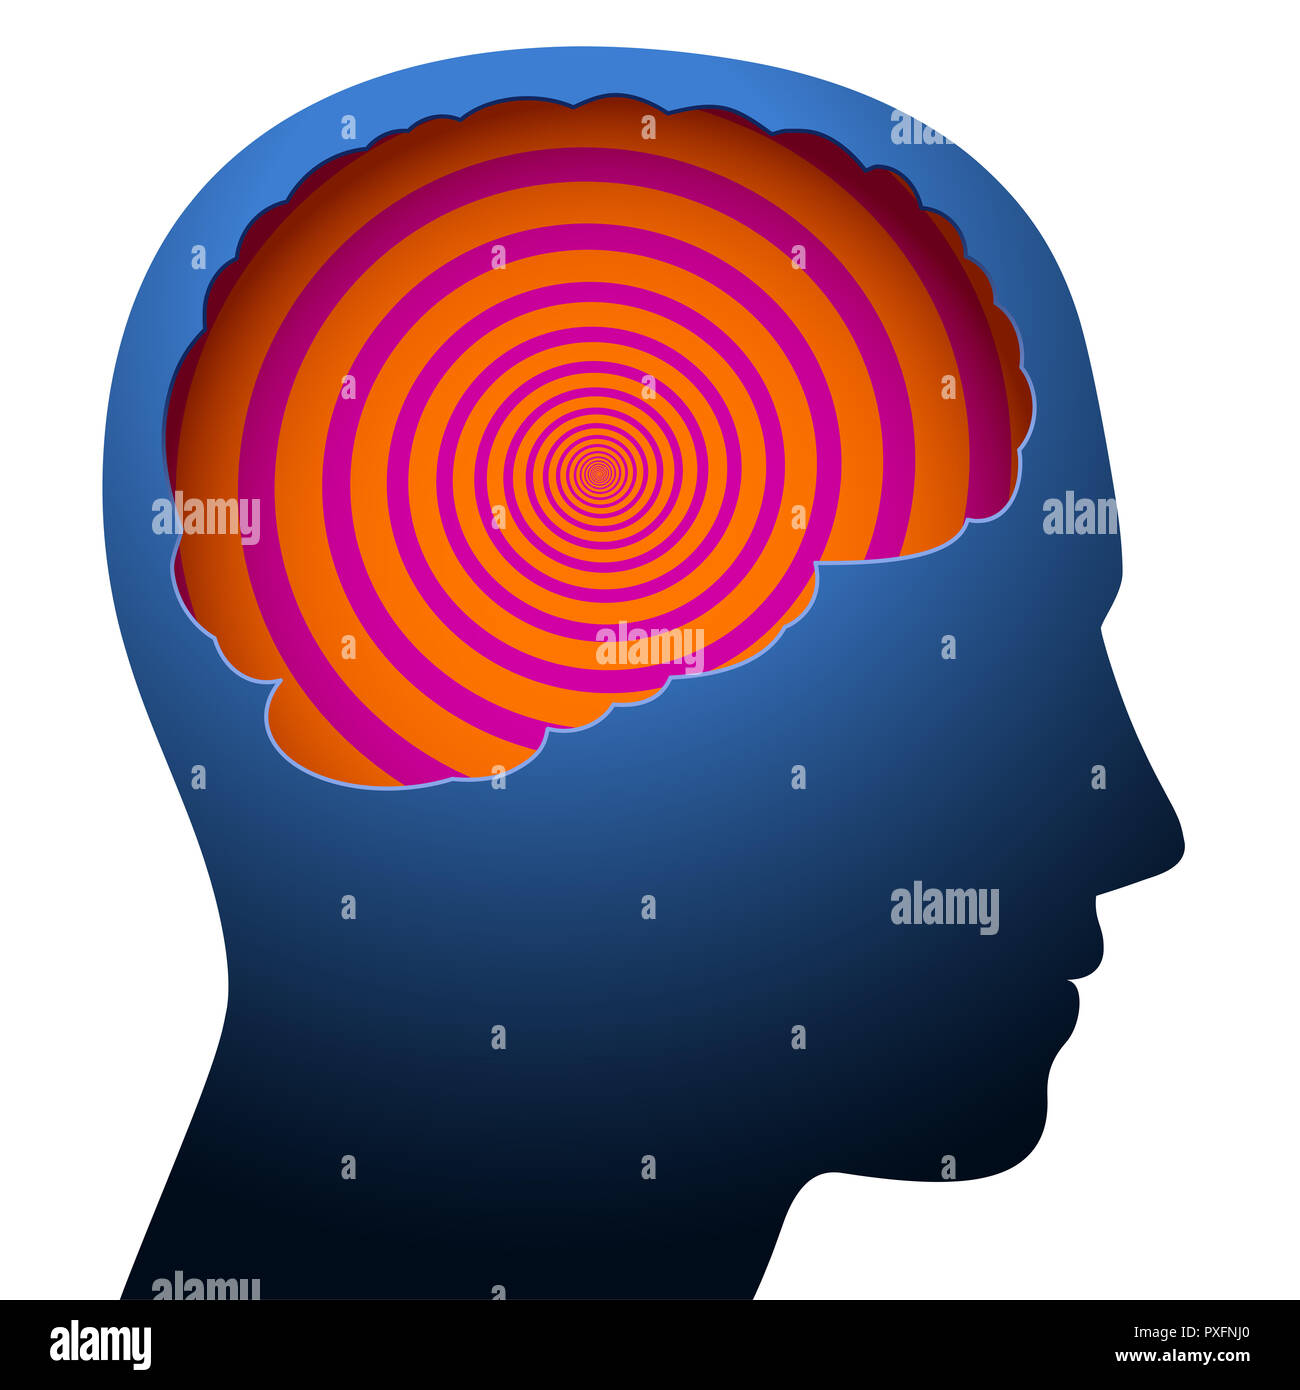 Geistige Verwirrung, Schwindel, mit einer psychedelischen Spirale in das Gehirn eines jungen Menschen symbolisiert. Stockfoto